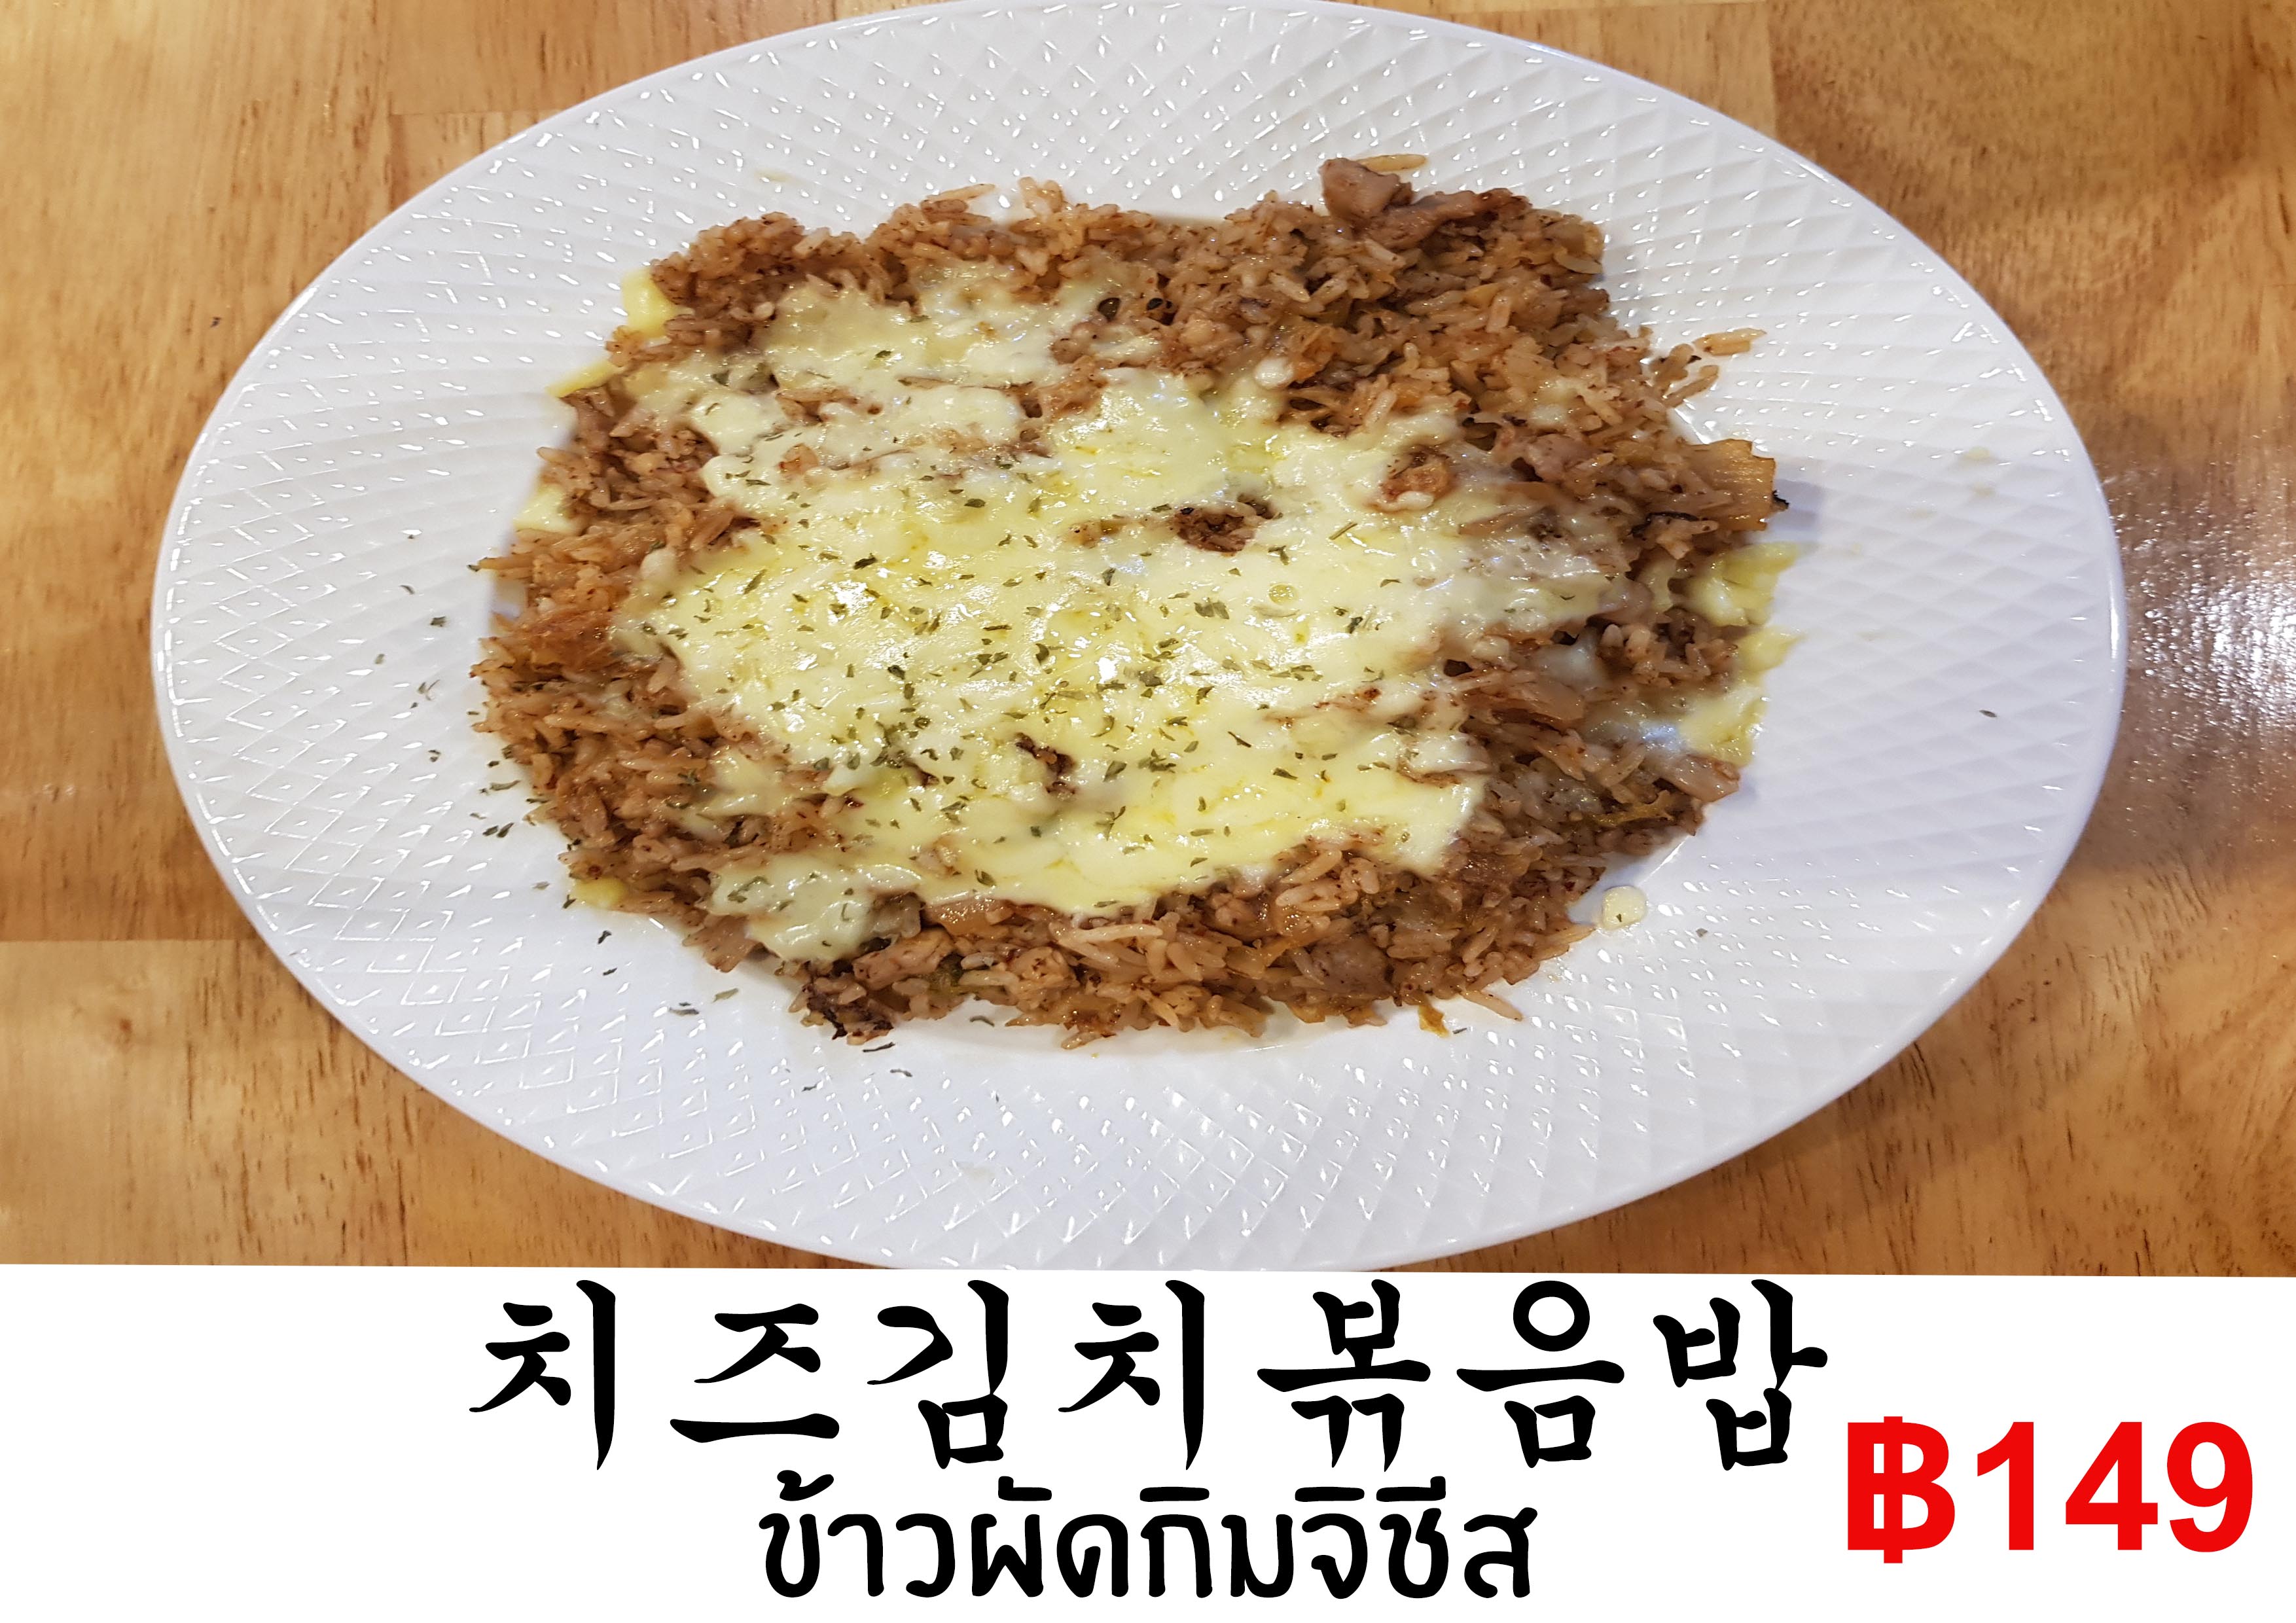 kimch fried rice